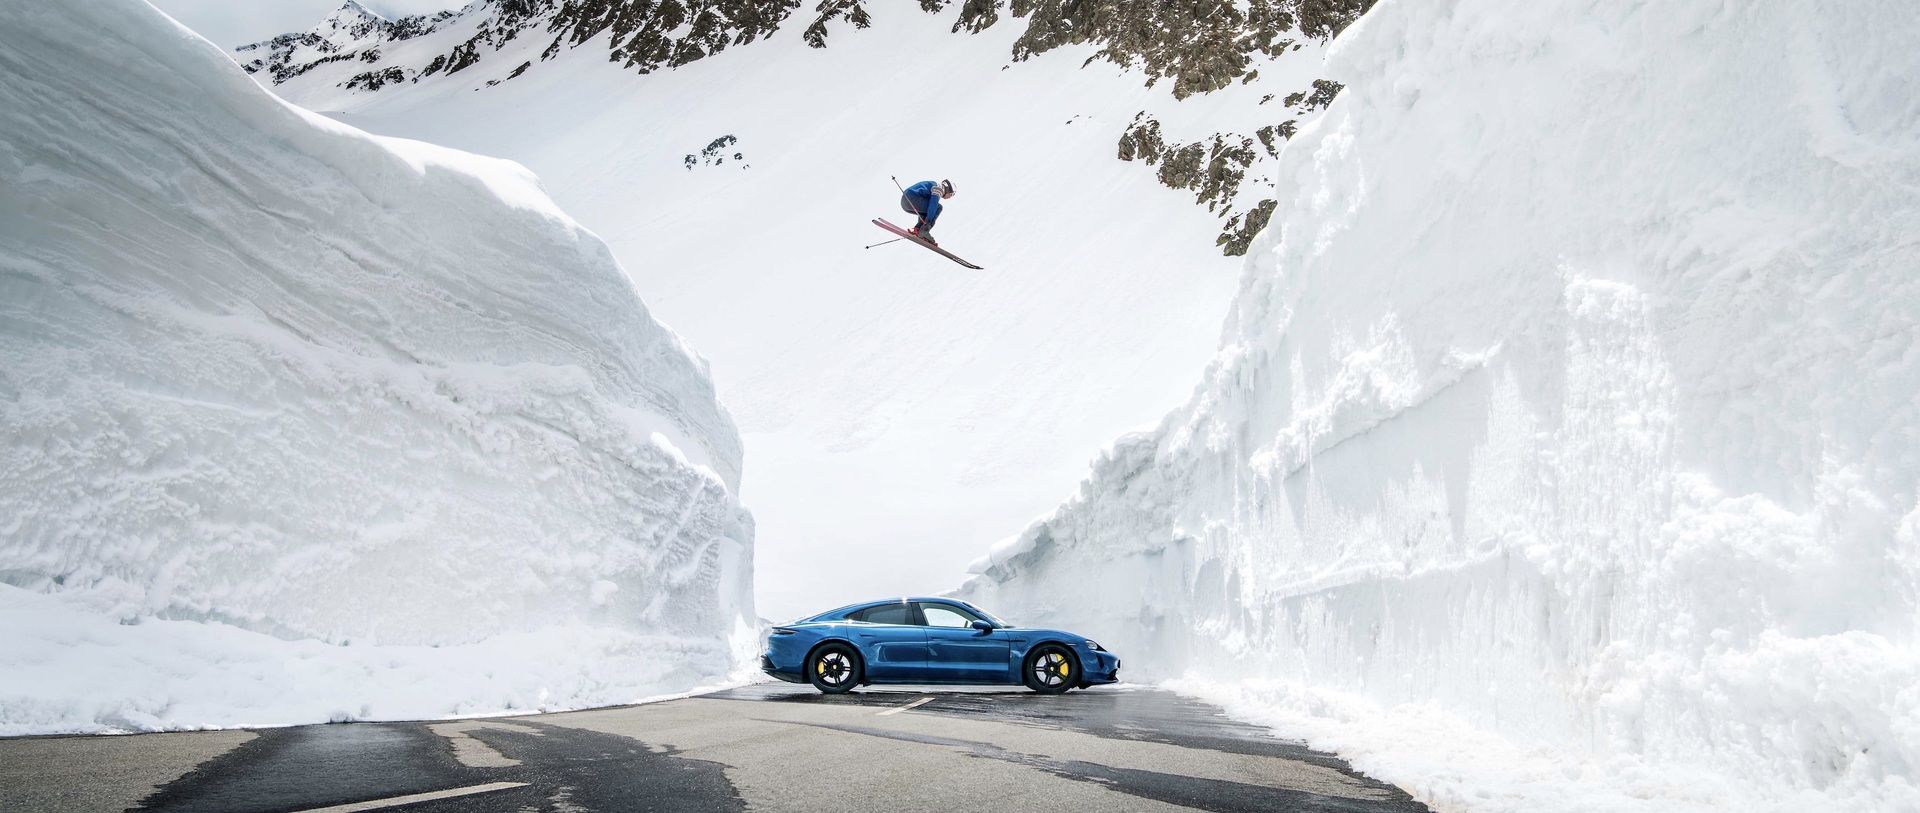 Salto Porsche esquí